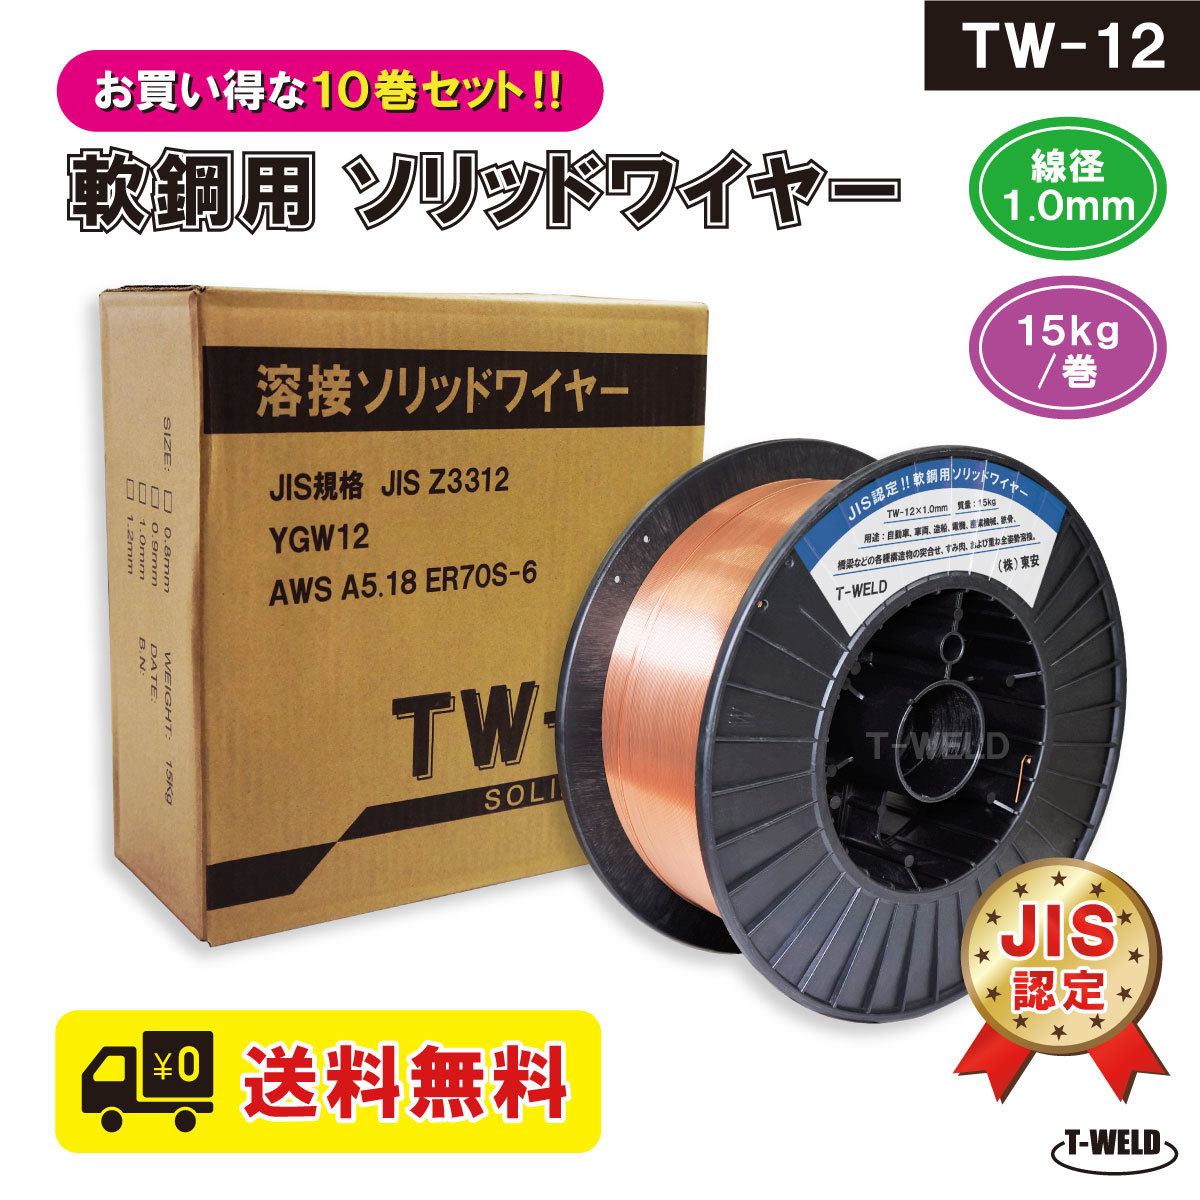 送料無料 き JIS認定 溶接ソリッドワイヤ TW-12 1.0mm ×15kg/巻 10巻セット